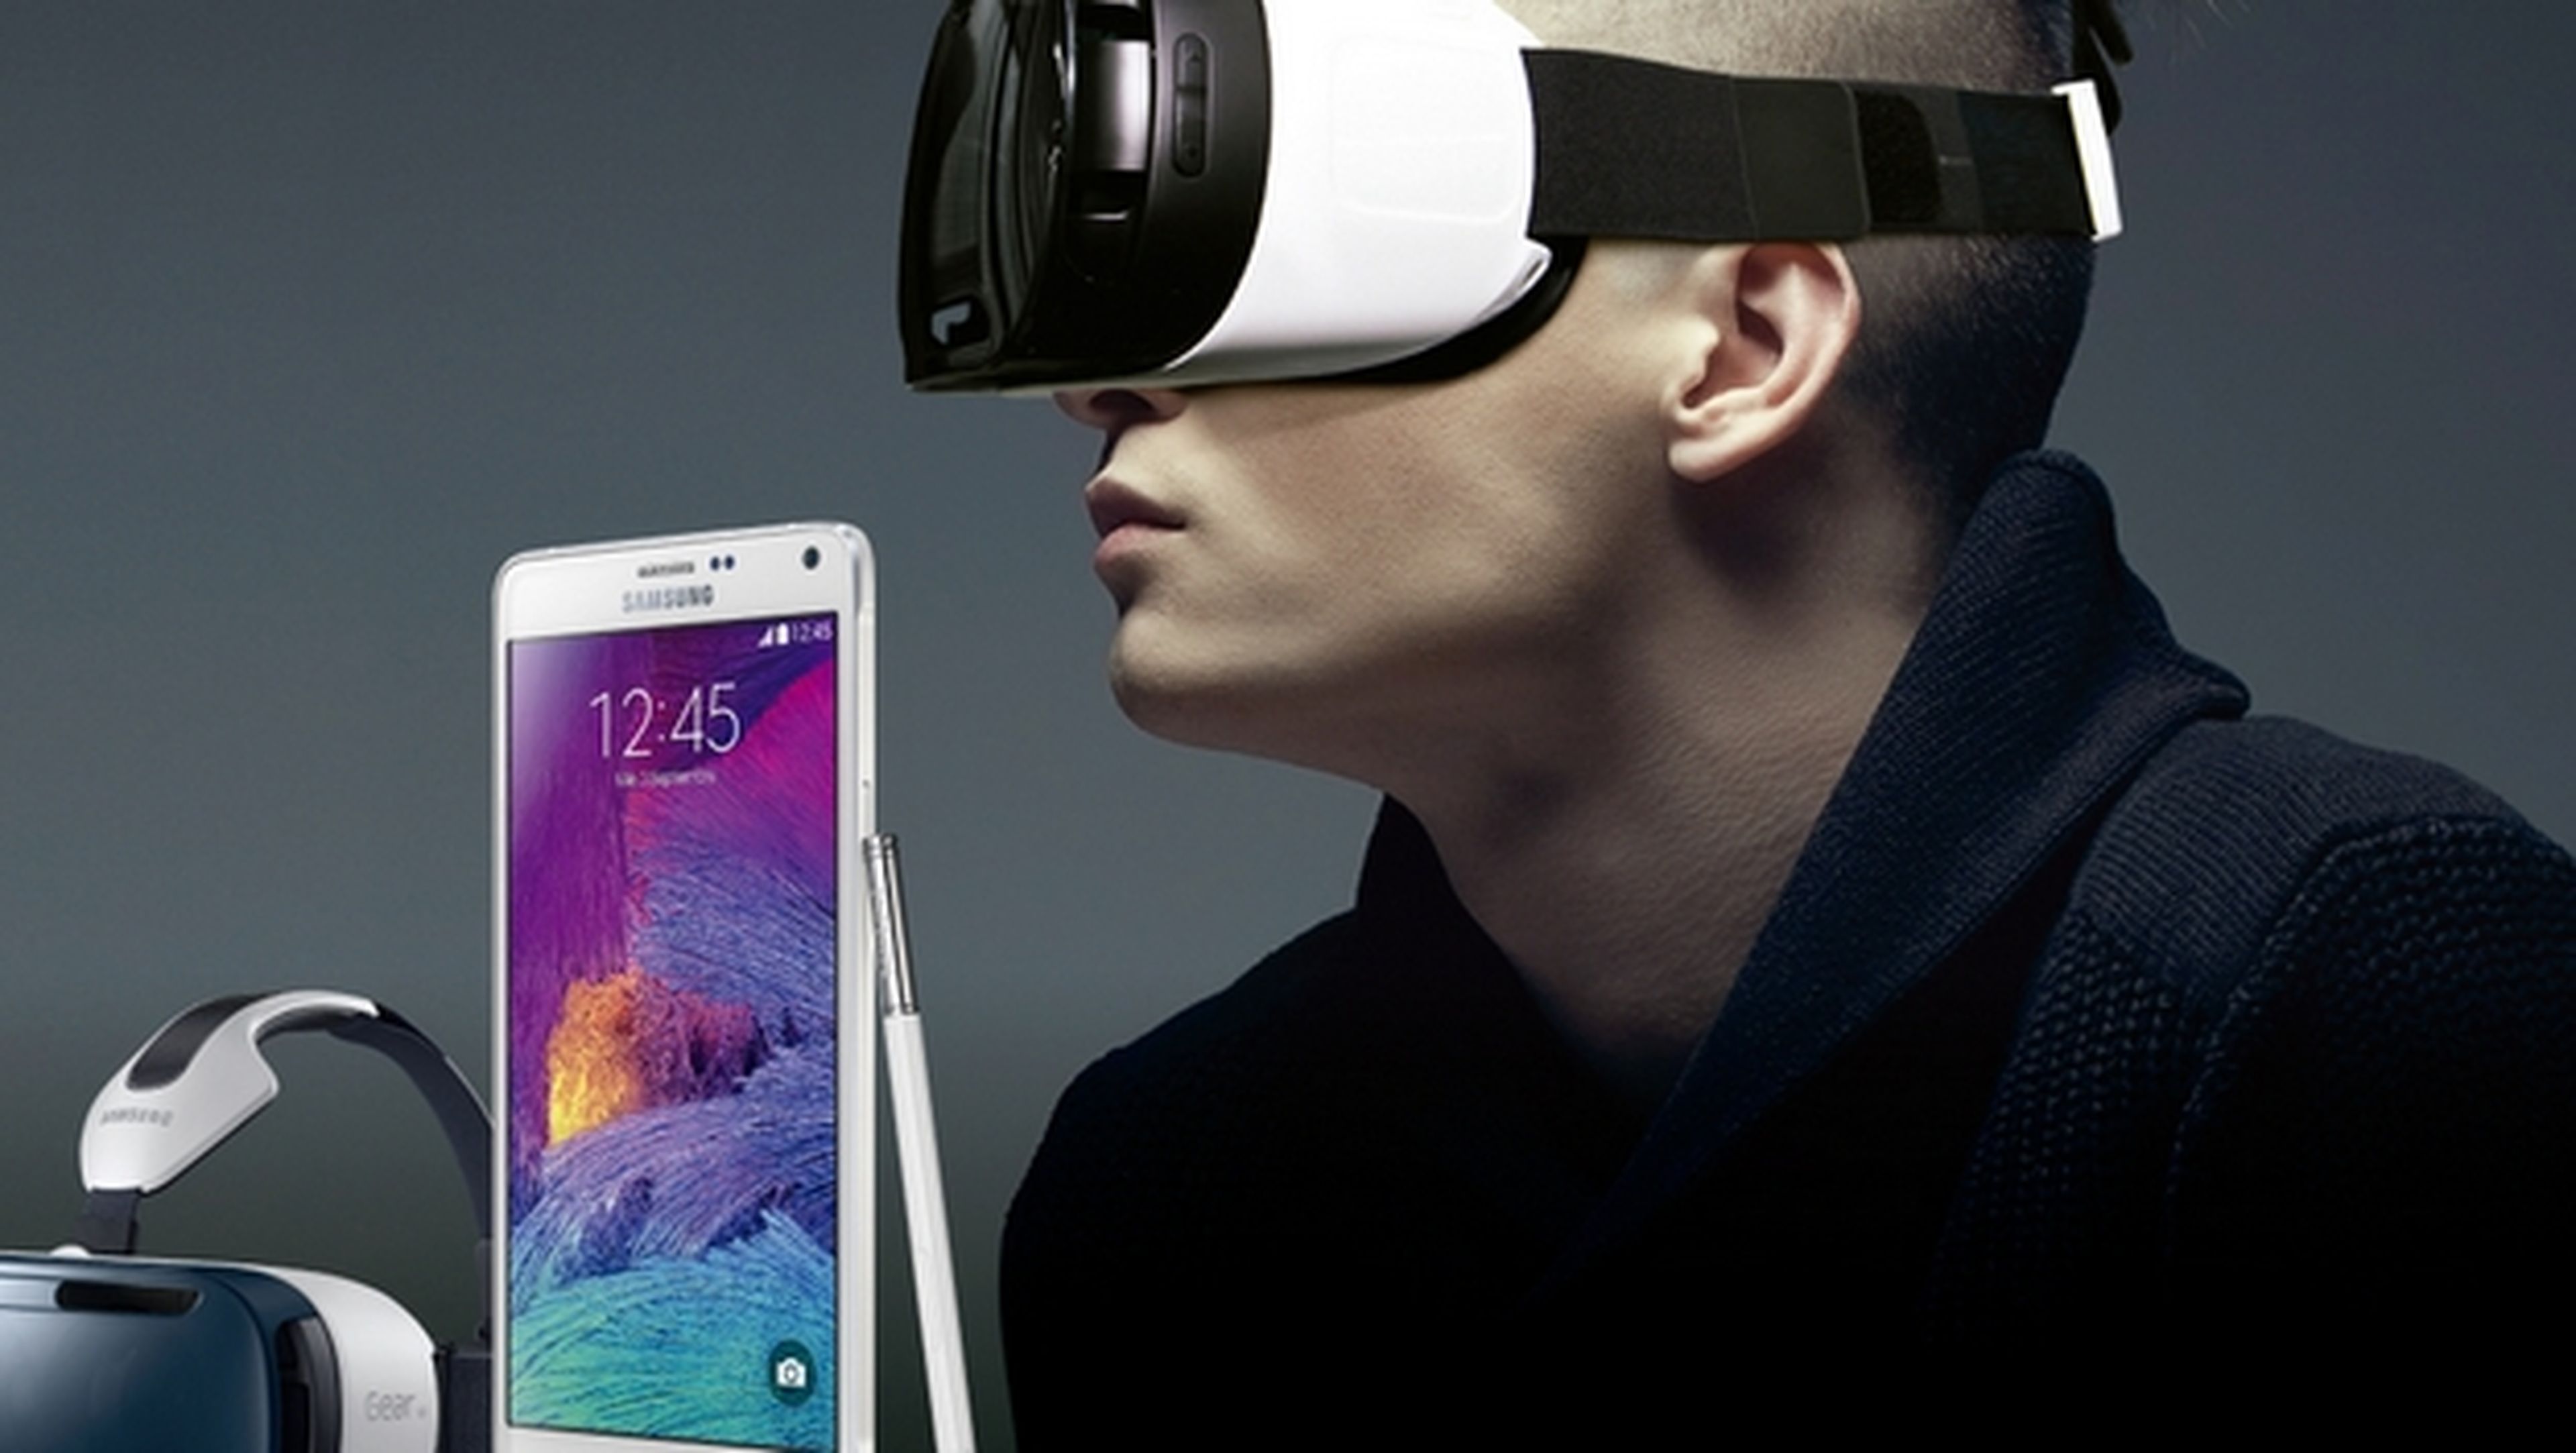 Samsung regala las gafas de realidad virtual Gear VR. ¡Consíguelas gratis!